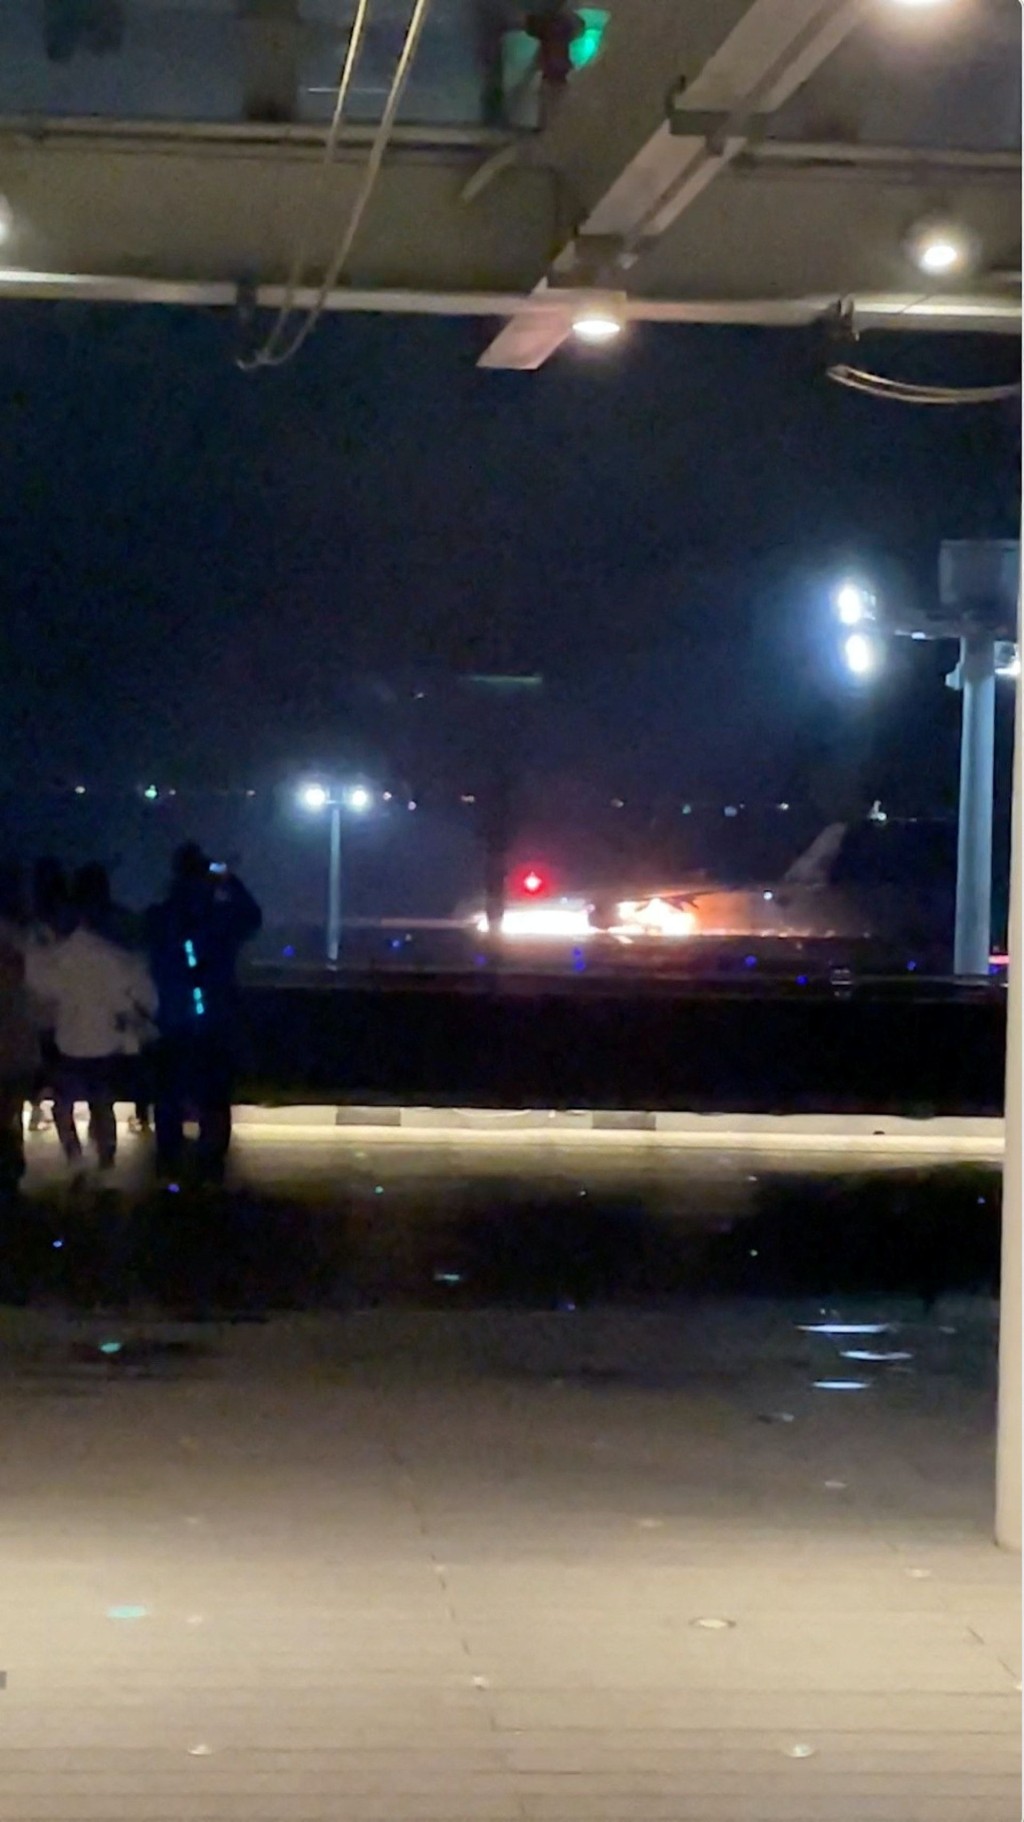 日本航空JAL516客機在東京羽田機場與海上保安廳飛機擦撞起火，造成5死1重傷事件。 路透社